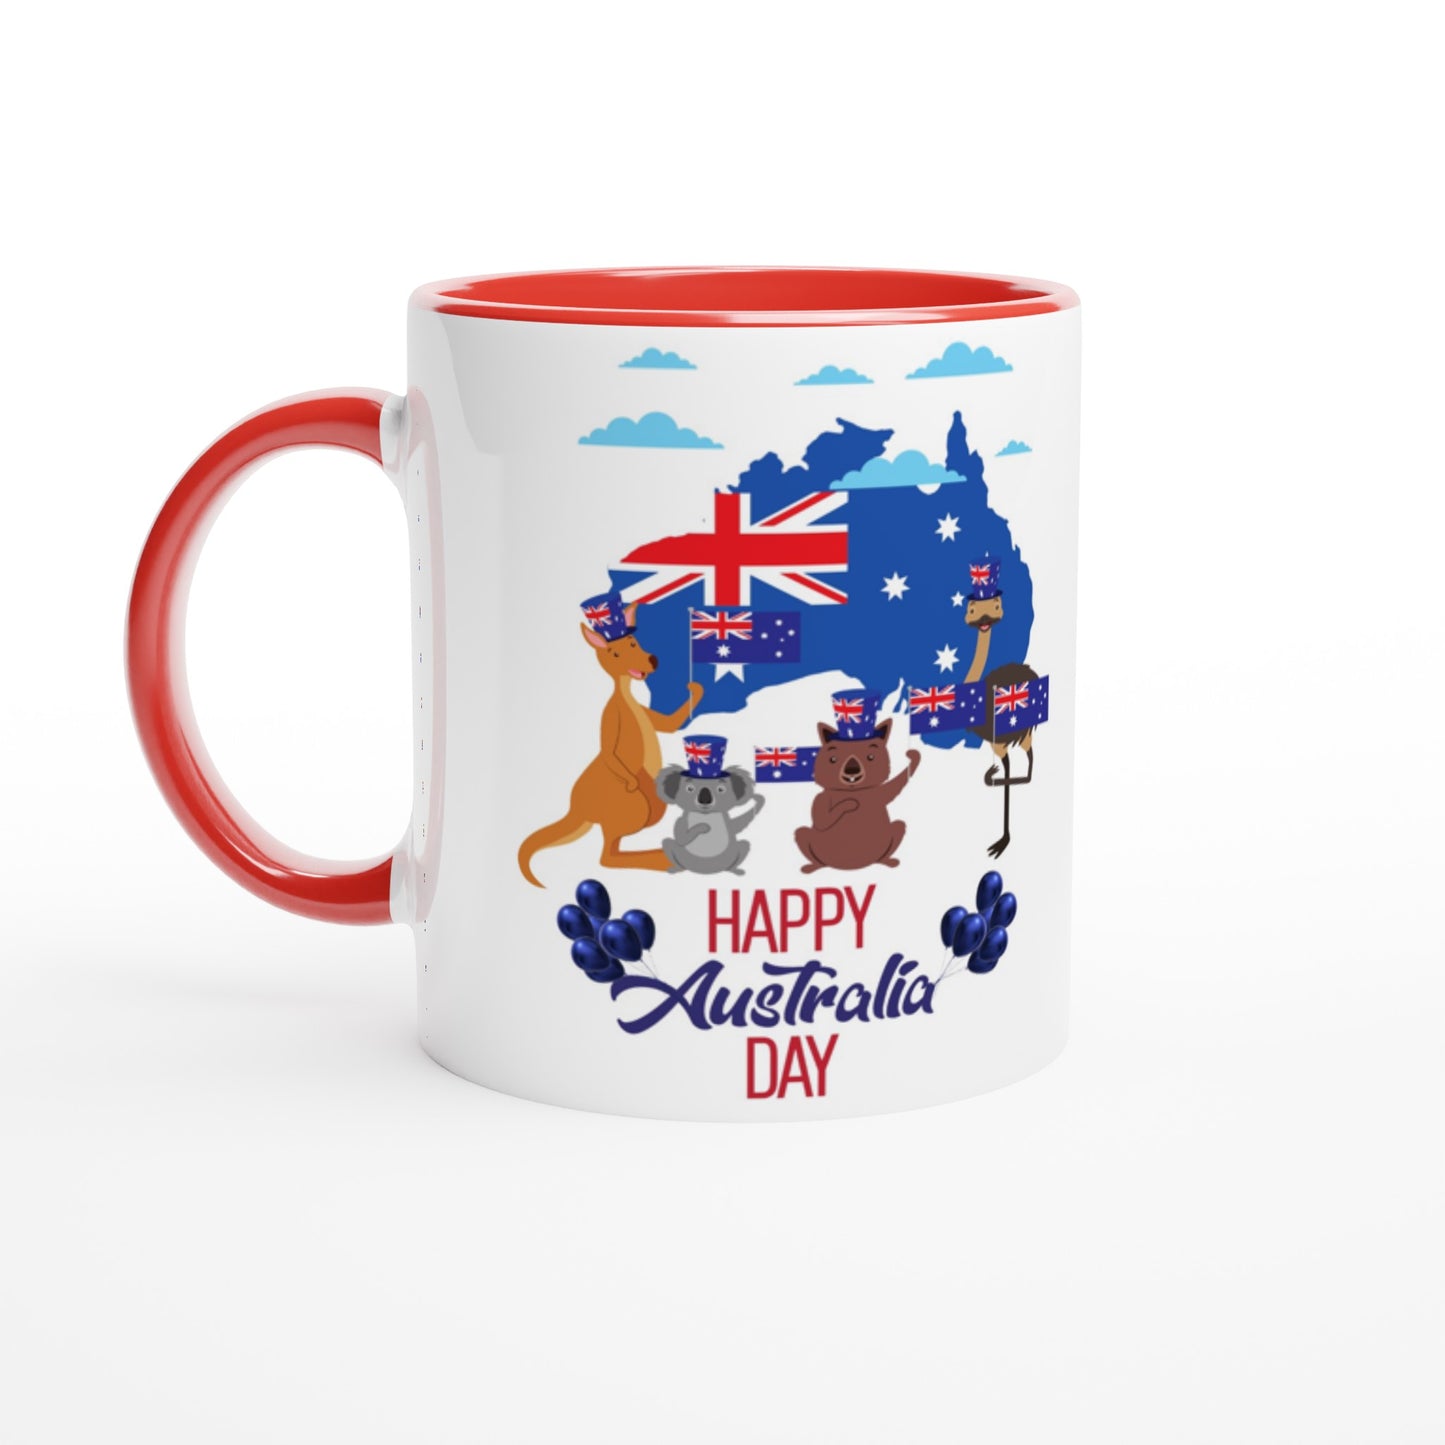 Australia Day White 11oz Ceramic Mug with Color Inside